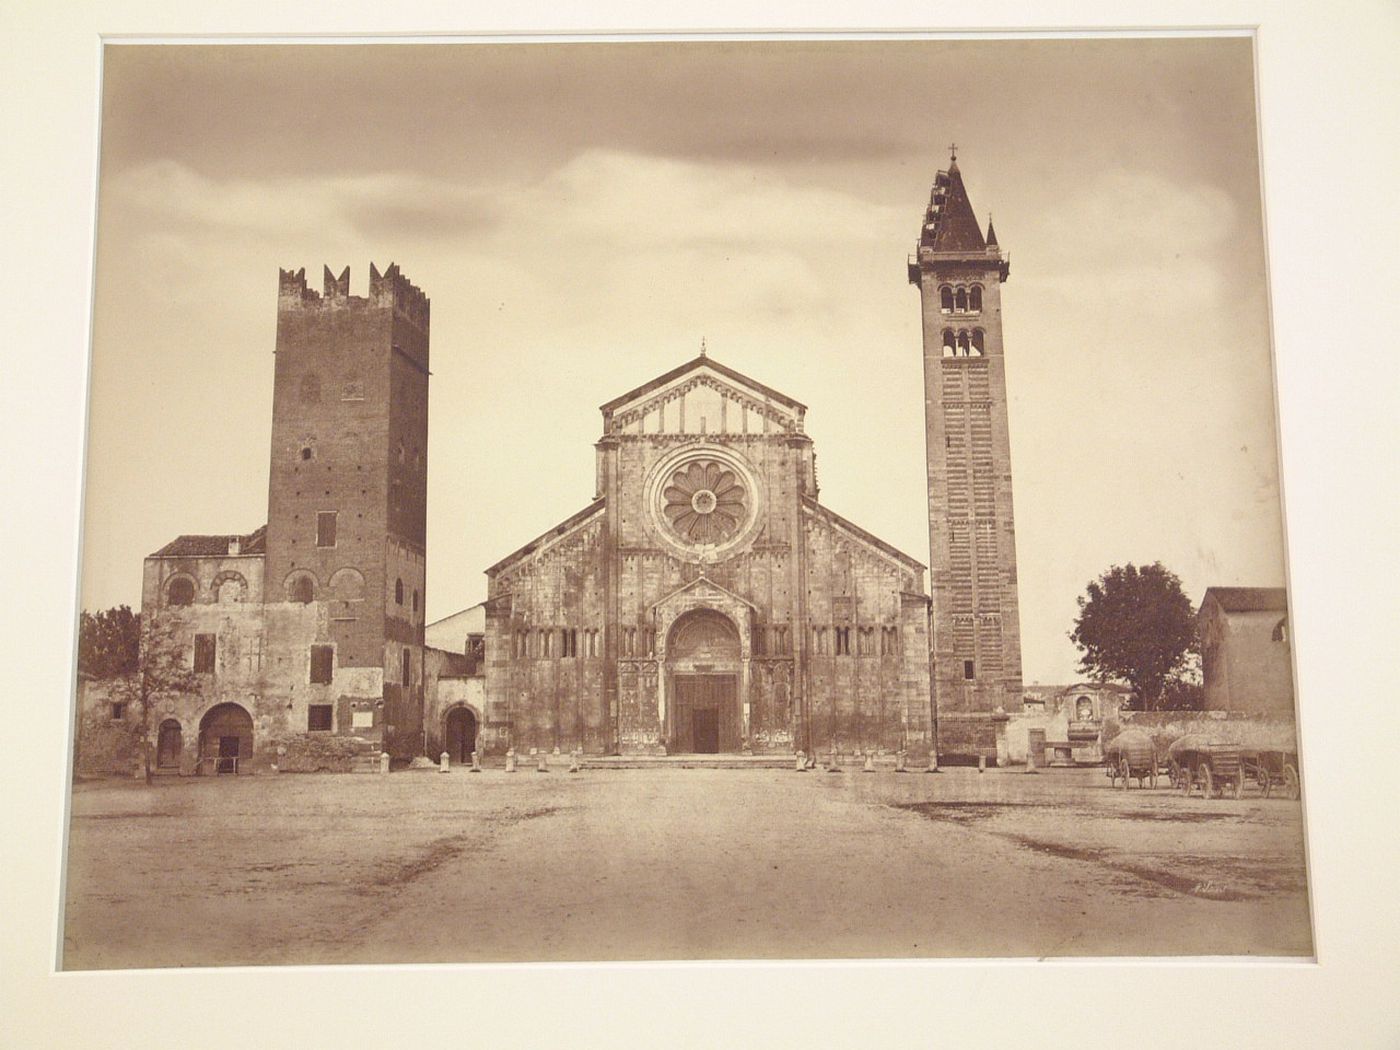 Piazza of S. Zeno and facade of chiesa S. Zeno Maggiore, Verona, Italy